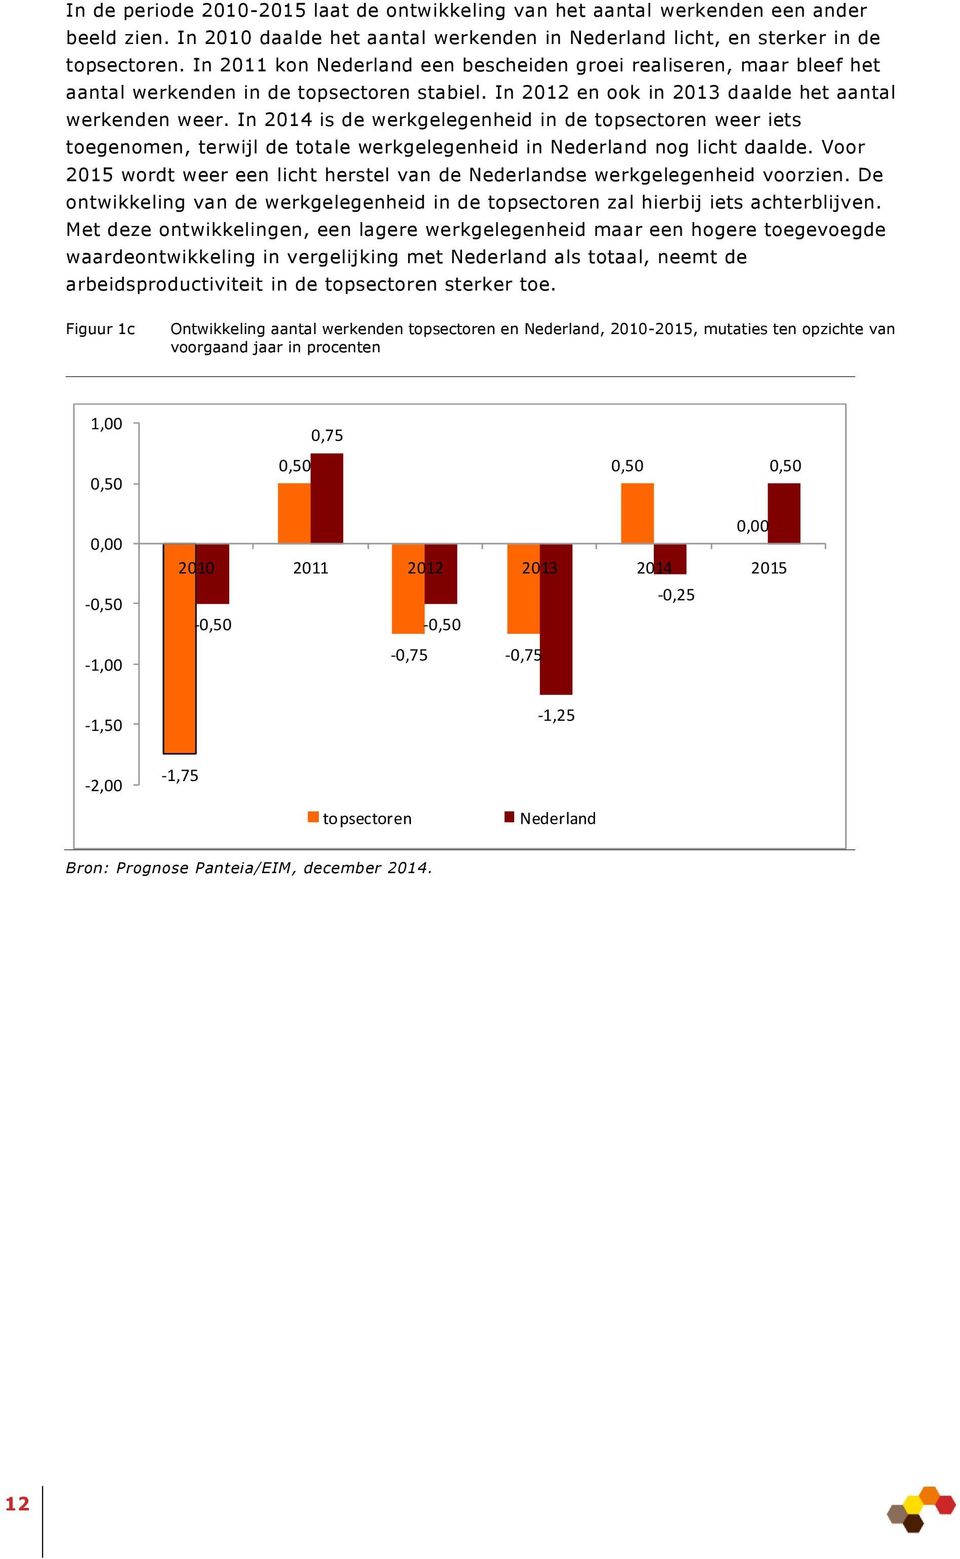 In 2014 is de werkgelegenheid in de topsectoren weer iets toegenomen, terwijl de totale werkgelegenheid in Nederland nog licht daalde.